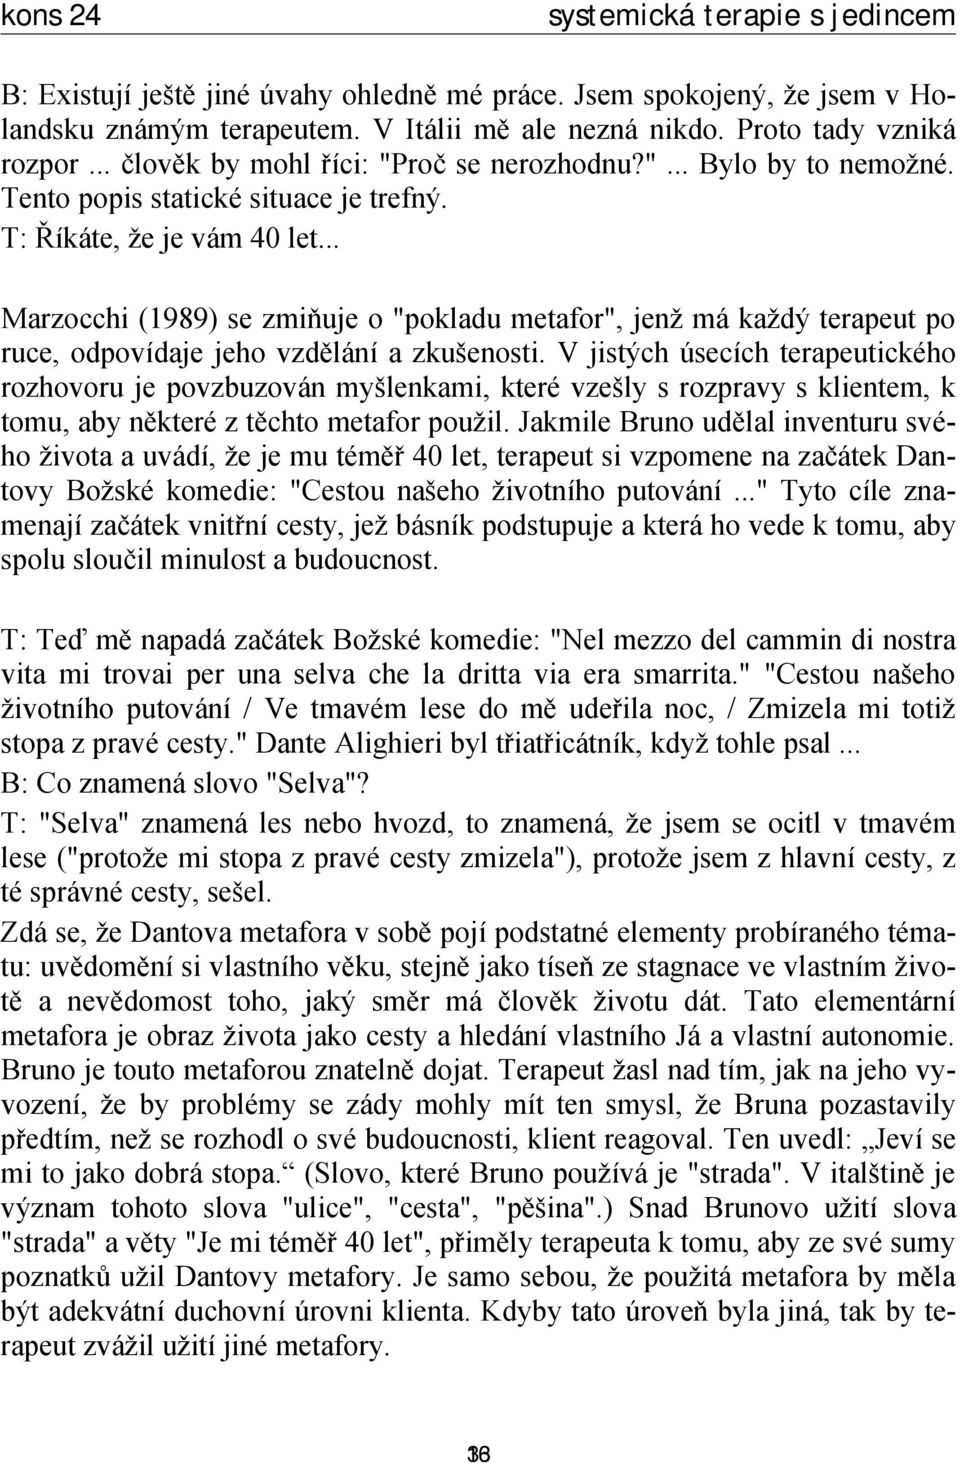 .. Marzocchi (1989) se zmiňuje o "pokladu metafor", jenž má každý terapeut po ruce, odpovídaje jeho vzdělání a zkušenosti.